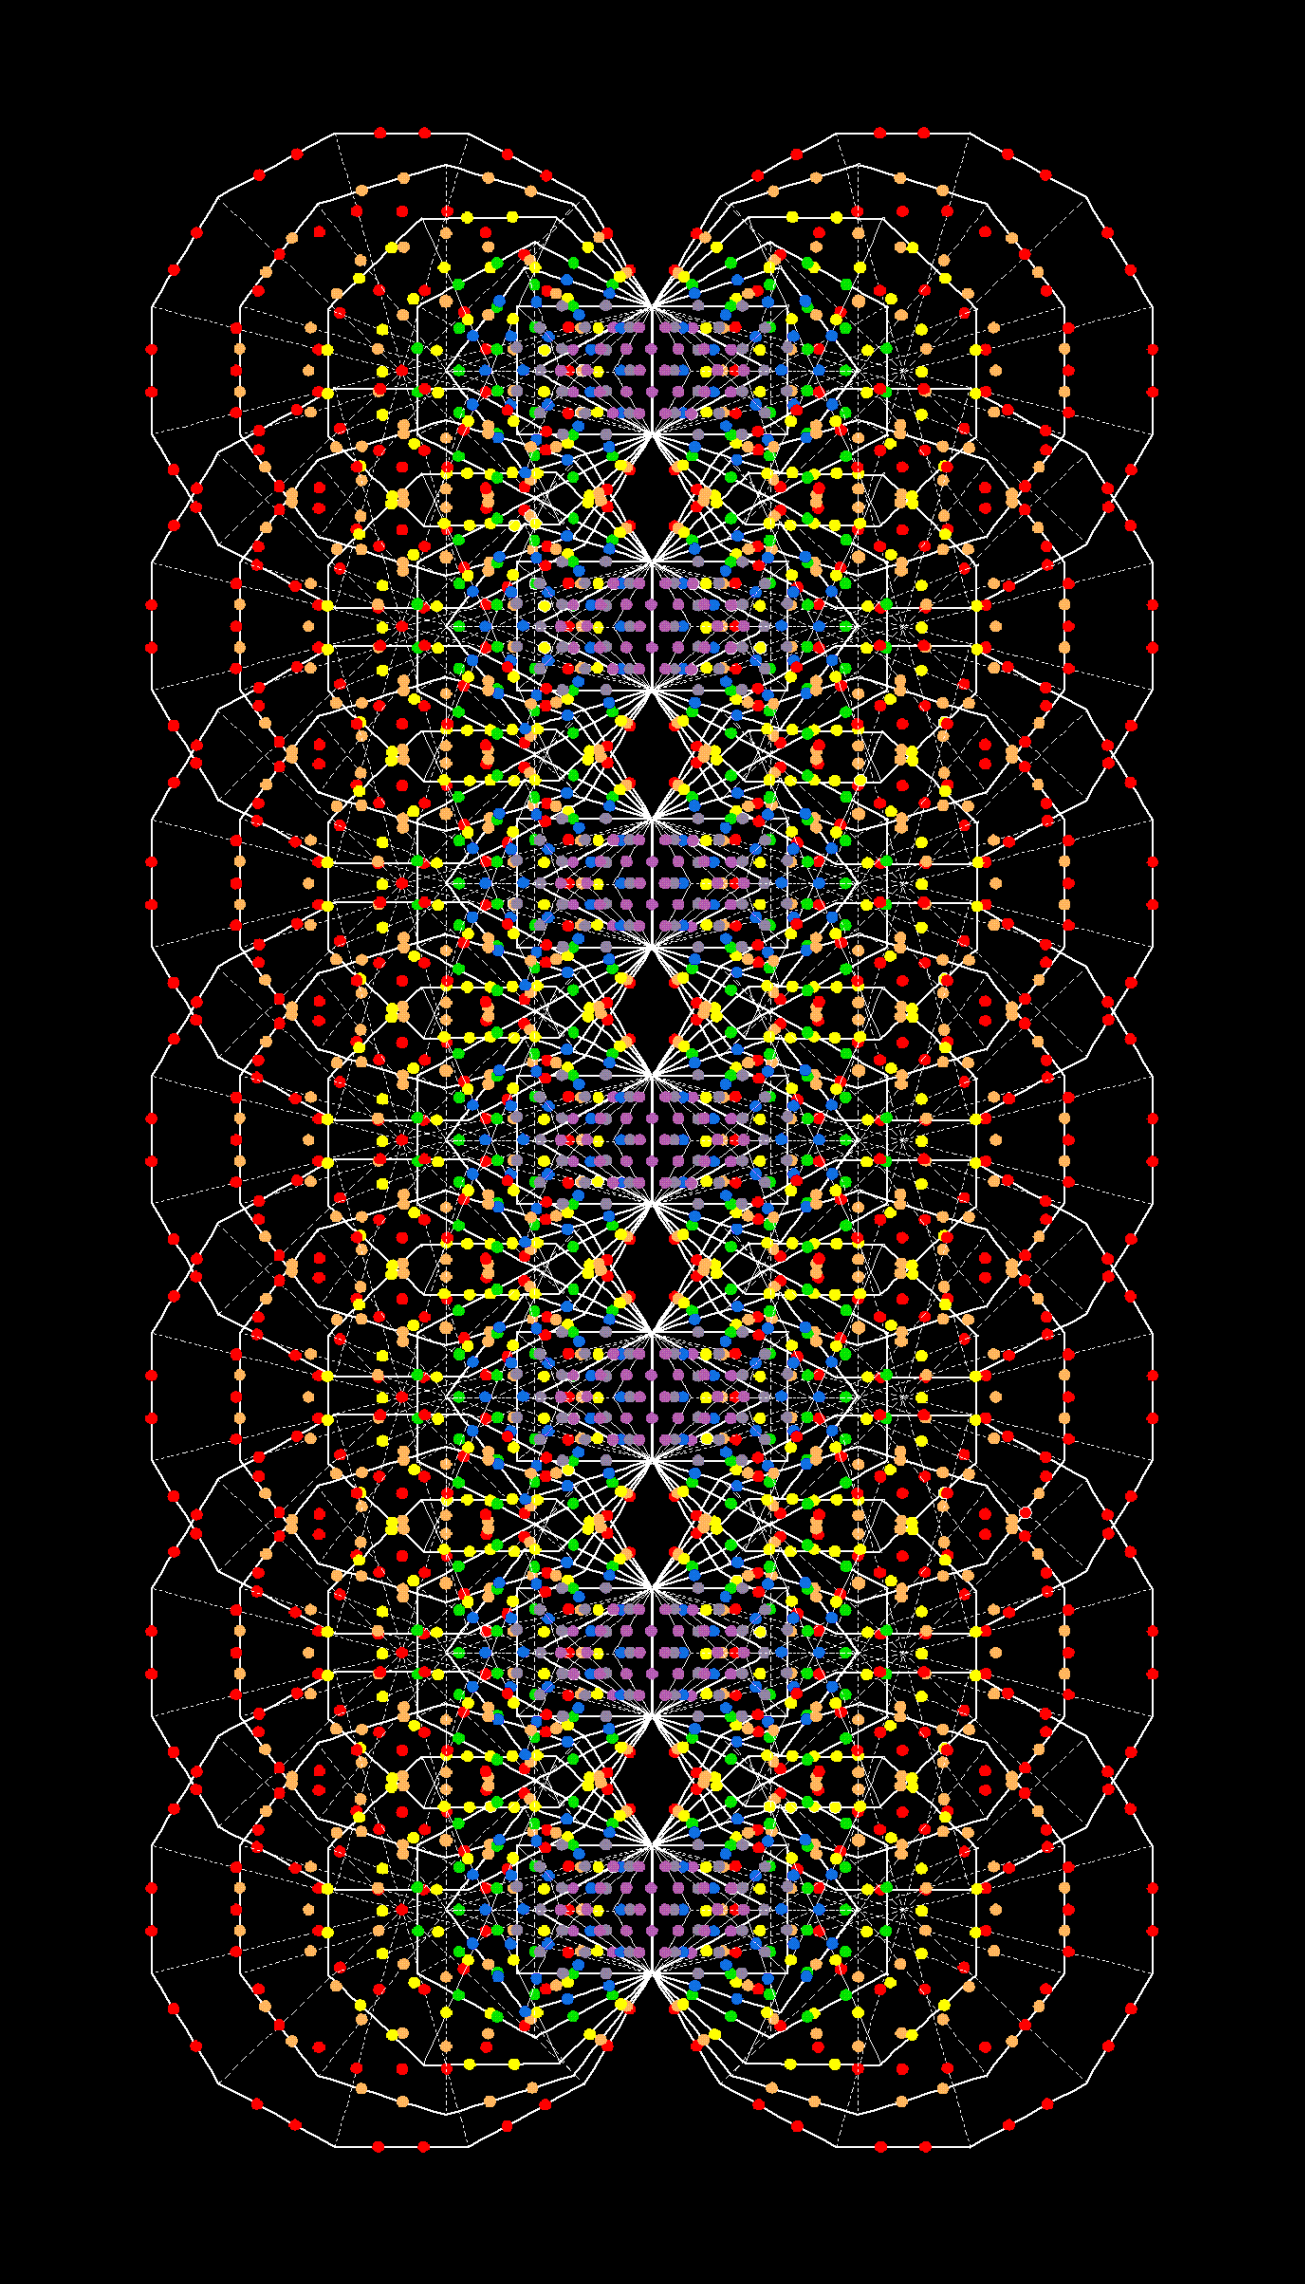 3108 hexagonal yods in inner form of 7 Trees of Life